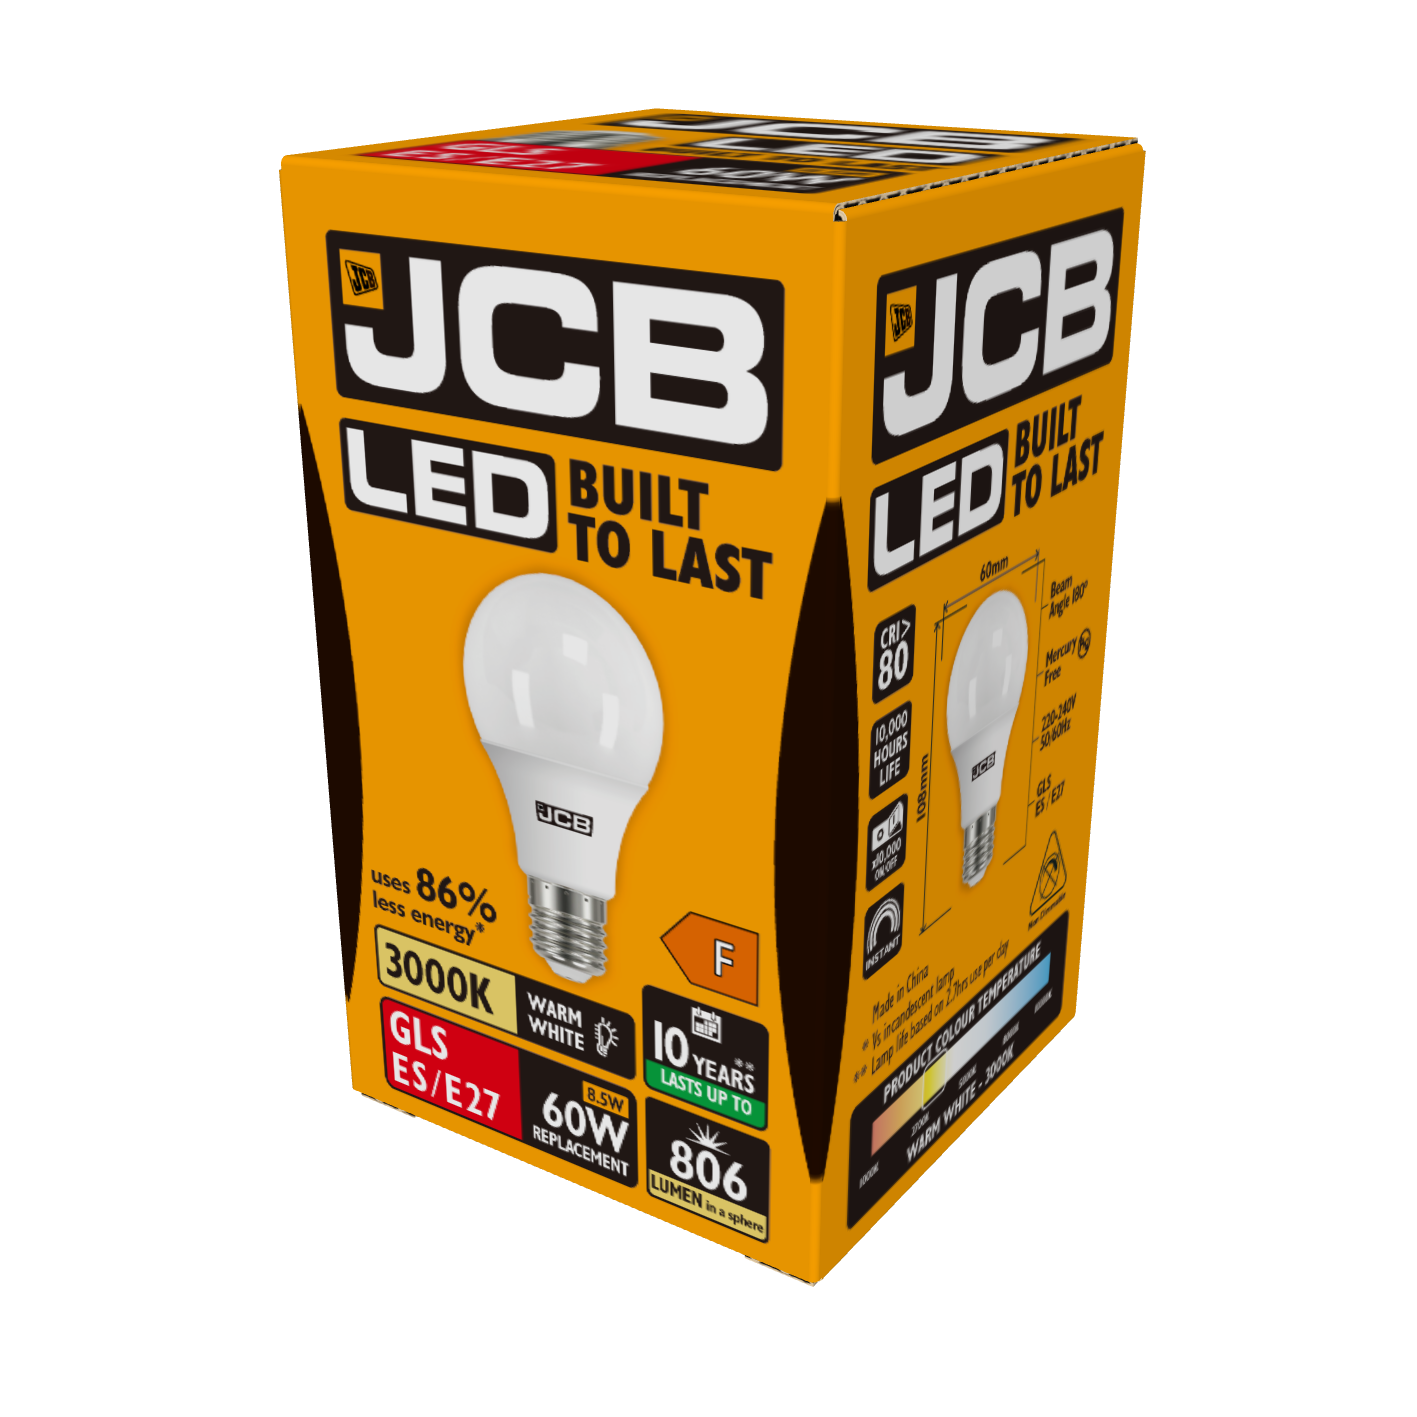 JCB LED GLS E27 (ES) 806lm 8,5W 3.000K (Warmweiß), Packung mit 1 Stück